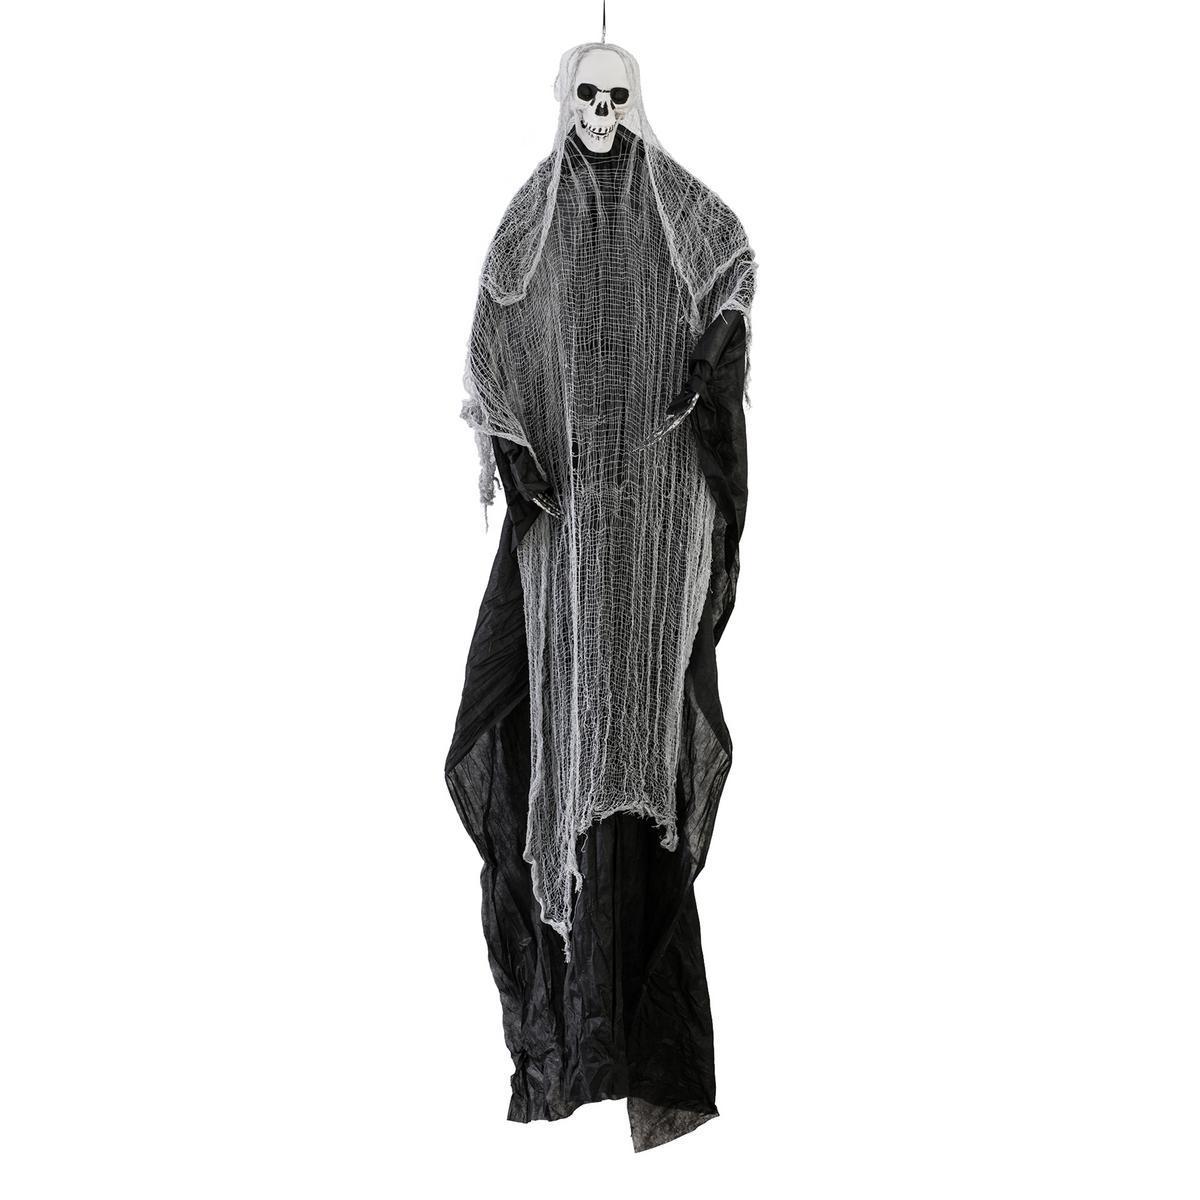 Décoration fantôme - 100 % Polyester - 180 x H 200 cm - Noir et blanc